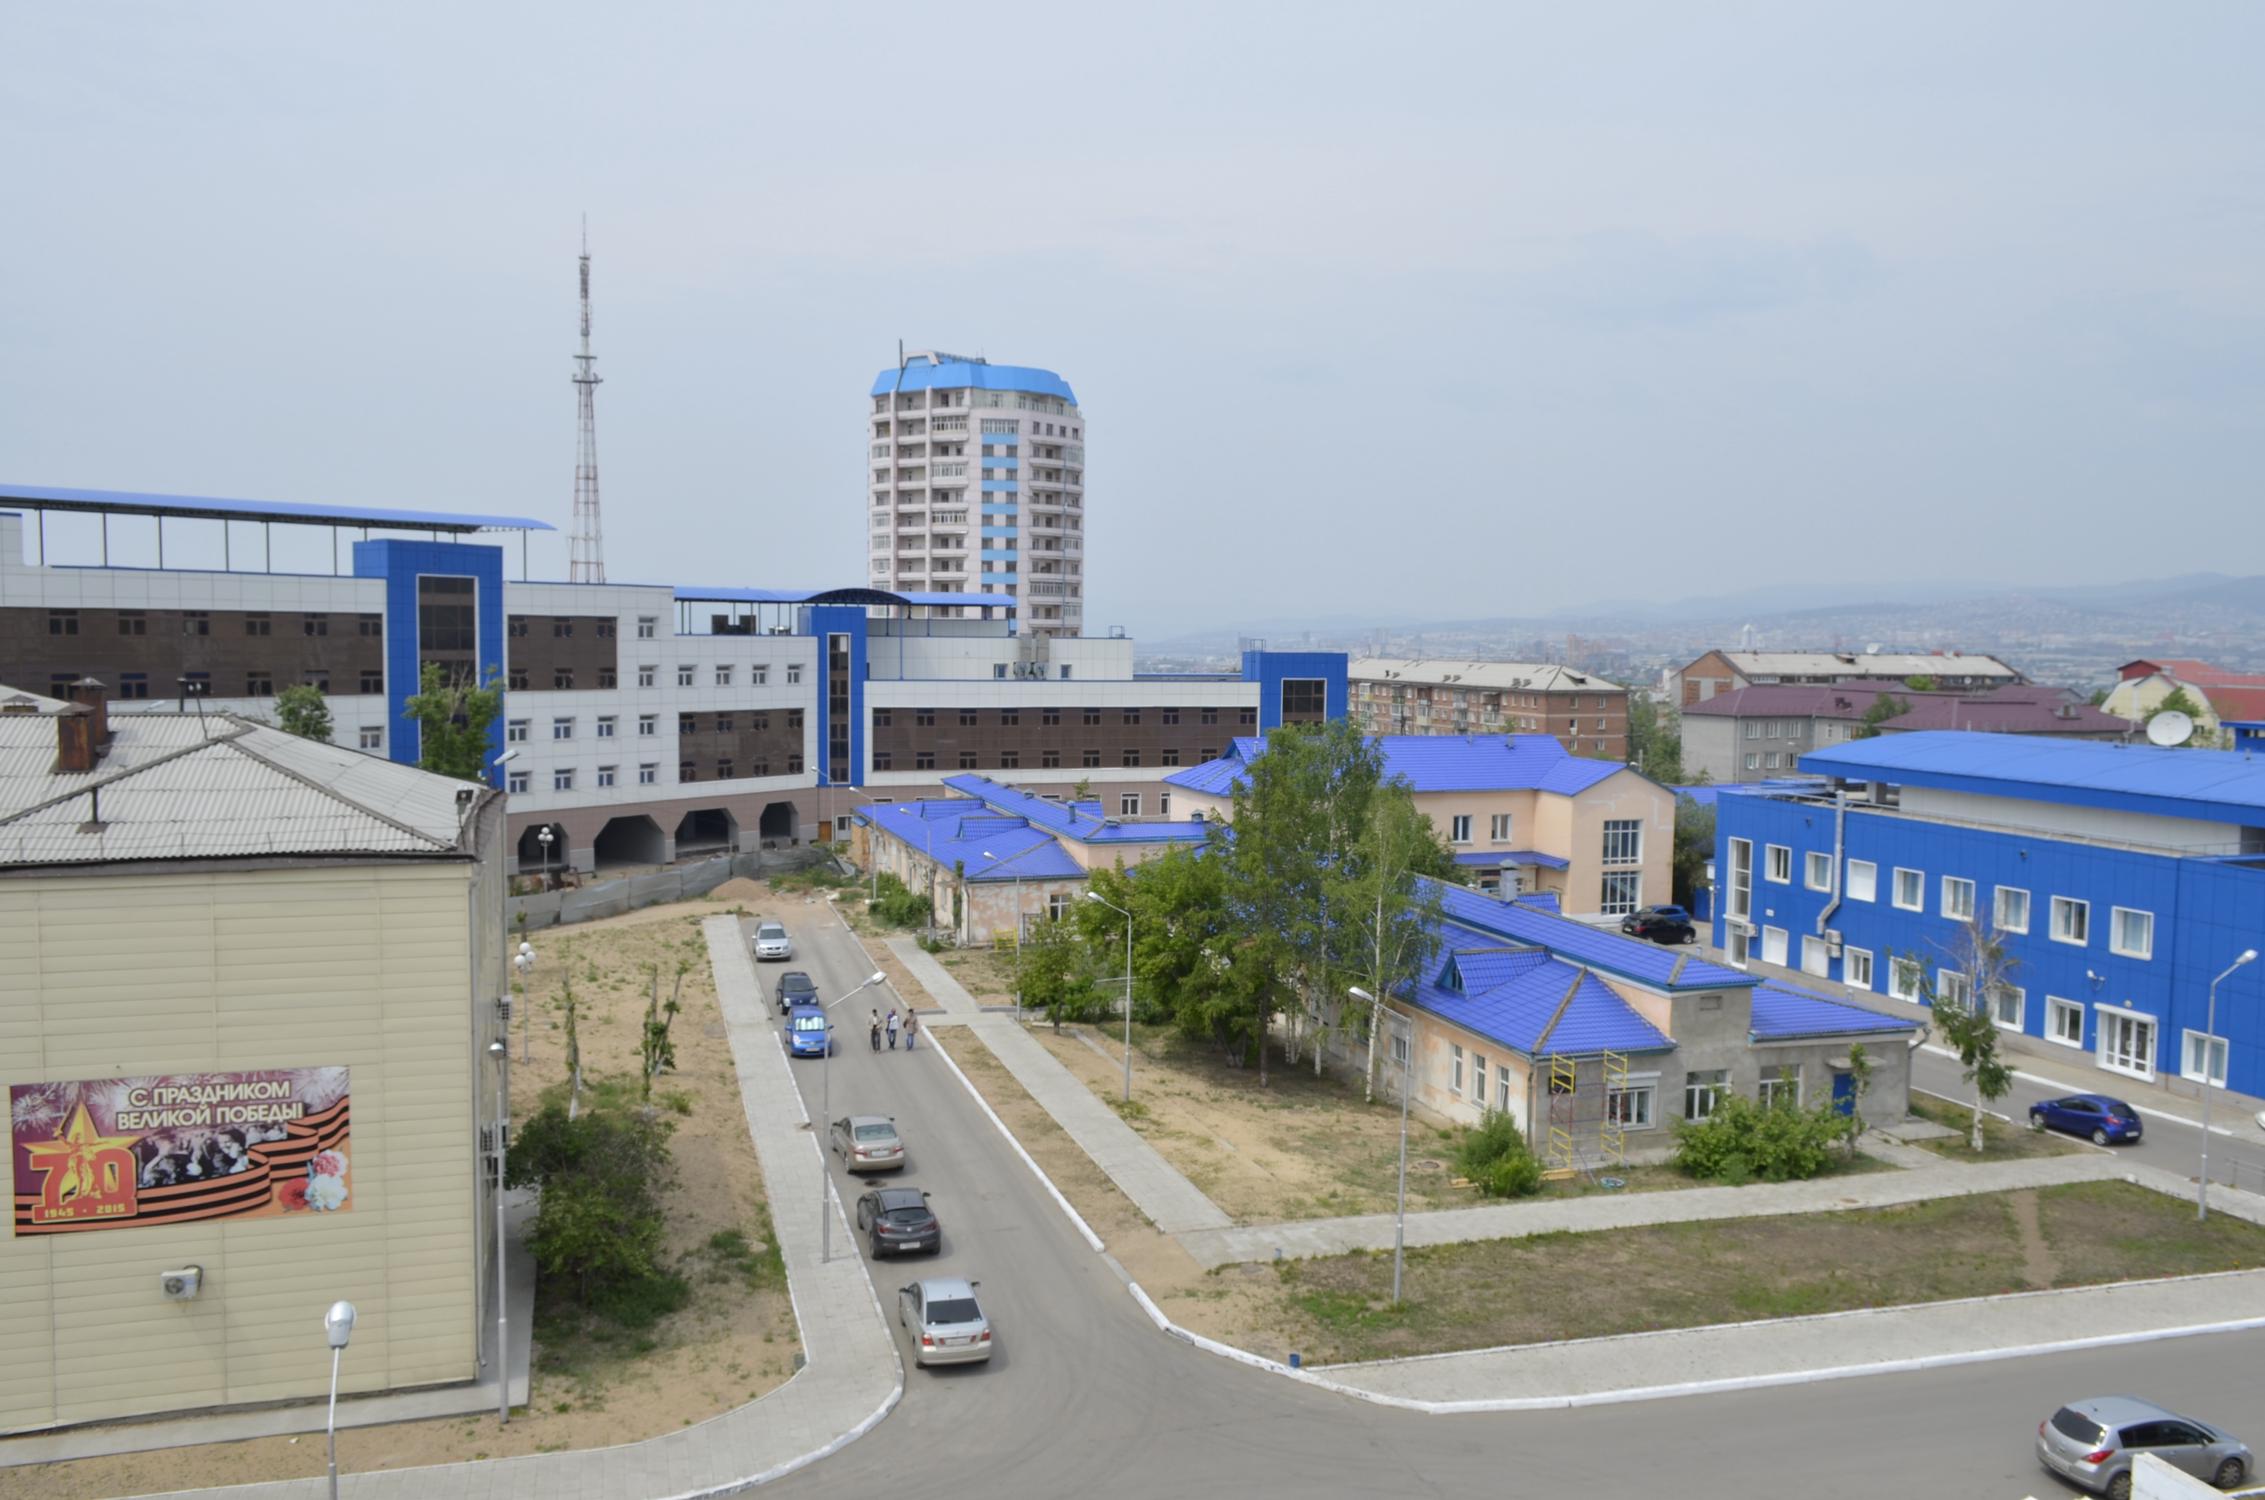 Наркологический улан удэ. Онкологический центр Улан-Удэ. Улан-Удэ онкологический центр на Пирогова. Пирогова 32 Улан-Удэ онкодиспансер.